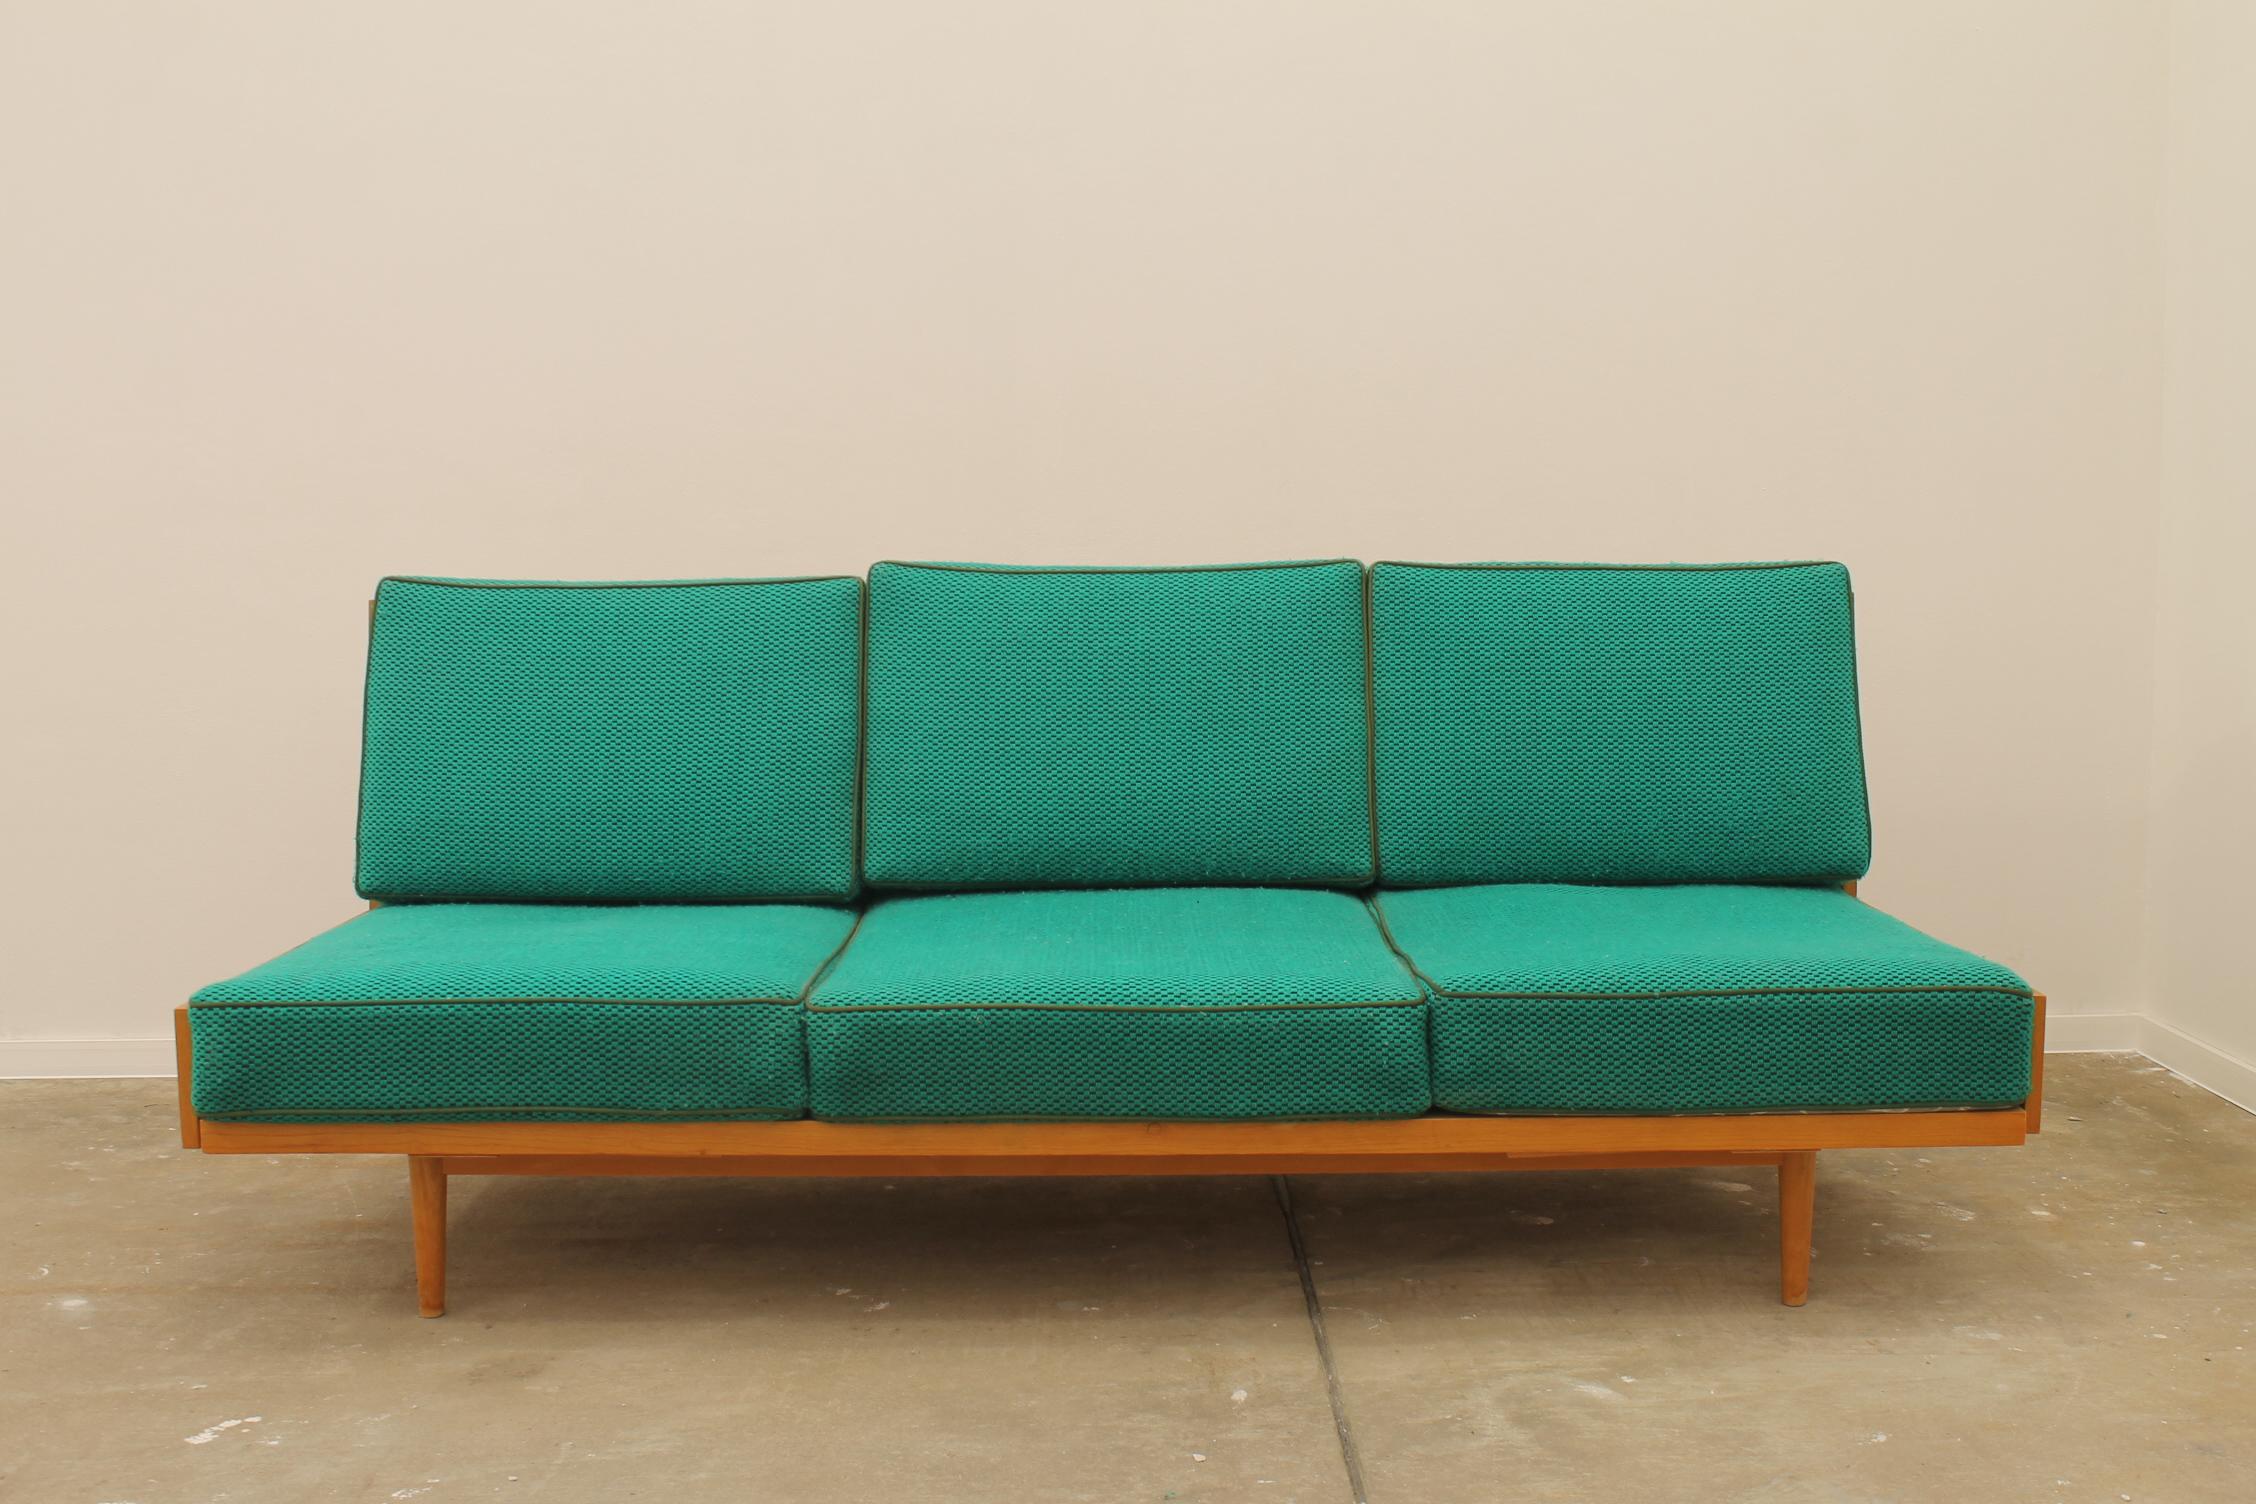 Schlafsofa aus der Mitte des Jahrhunderts, hergestellt in der ehemaligen Tschechoslowakei in den 1970er Jahren. Das Sofa hat eine Struktur aus Buchenholz, es ist in sehr gutem Zustand, zeigt leichte Alters- und Gebrauchsspuren.

Länge: 200